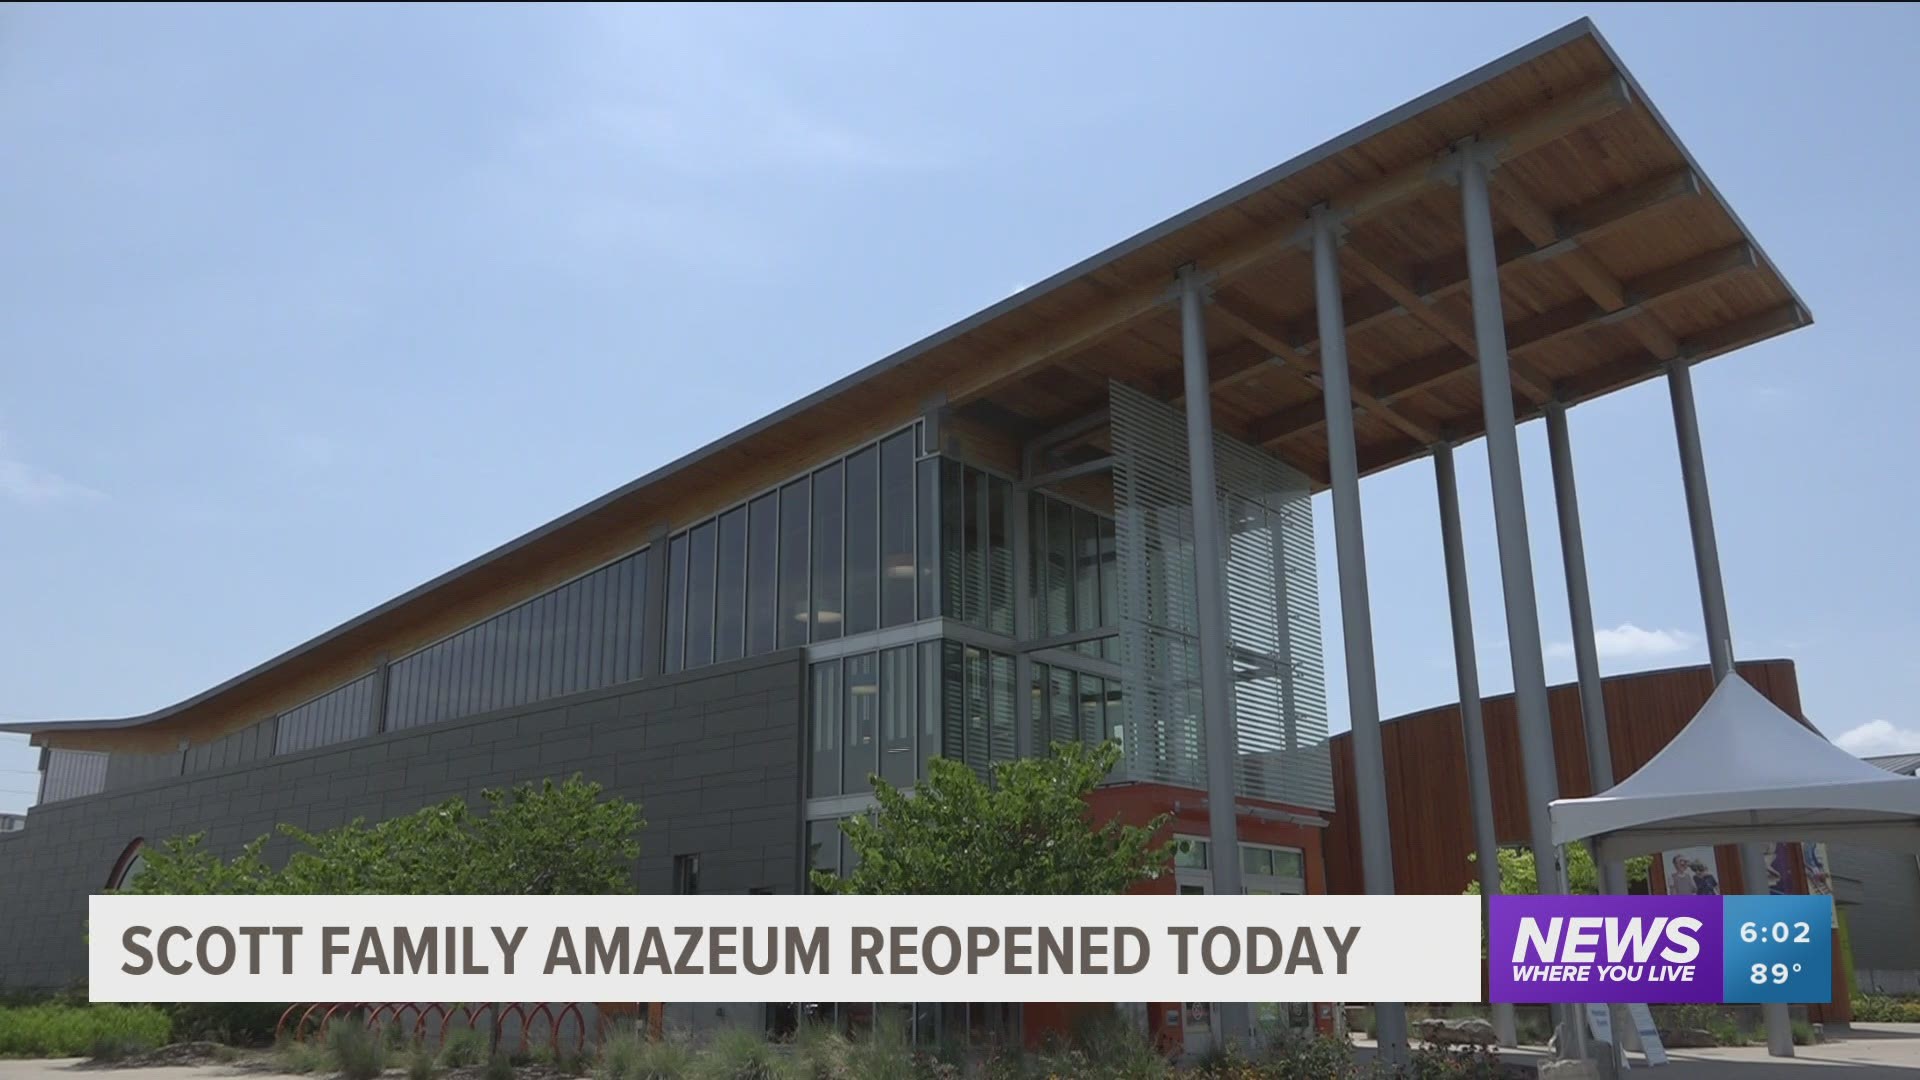 Scott Family Amazeum reopened today.